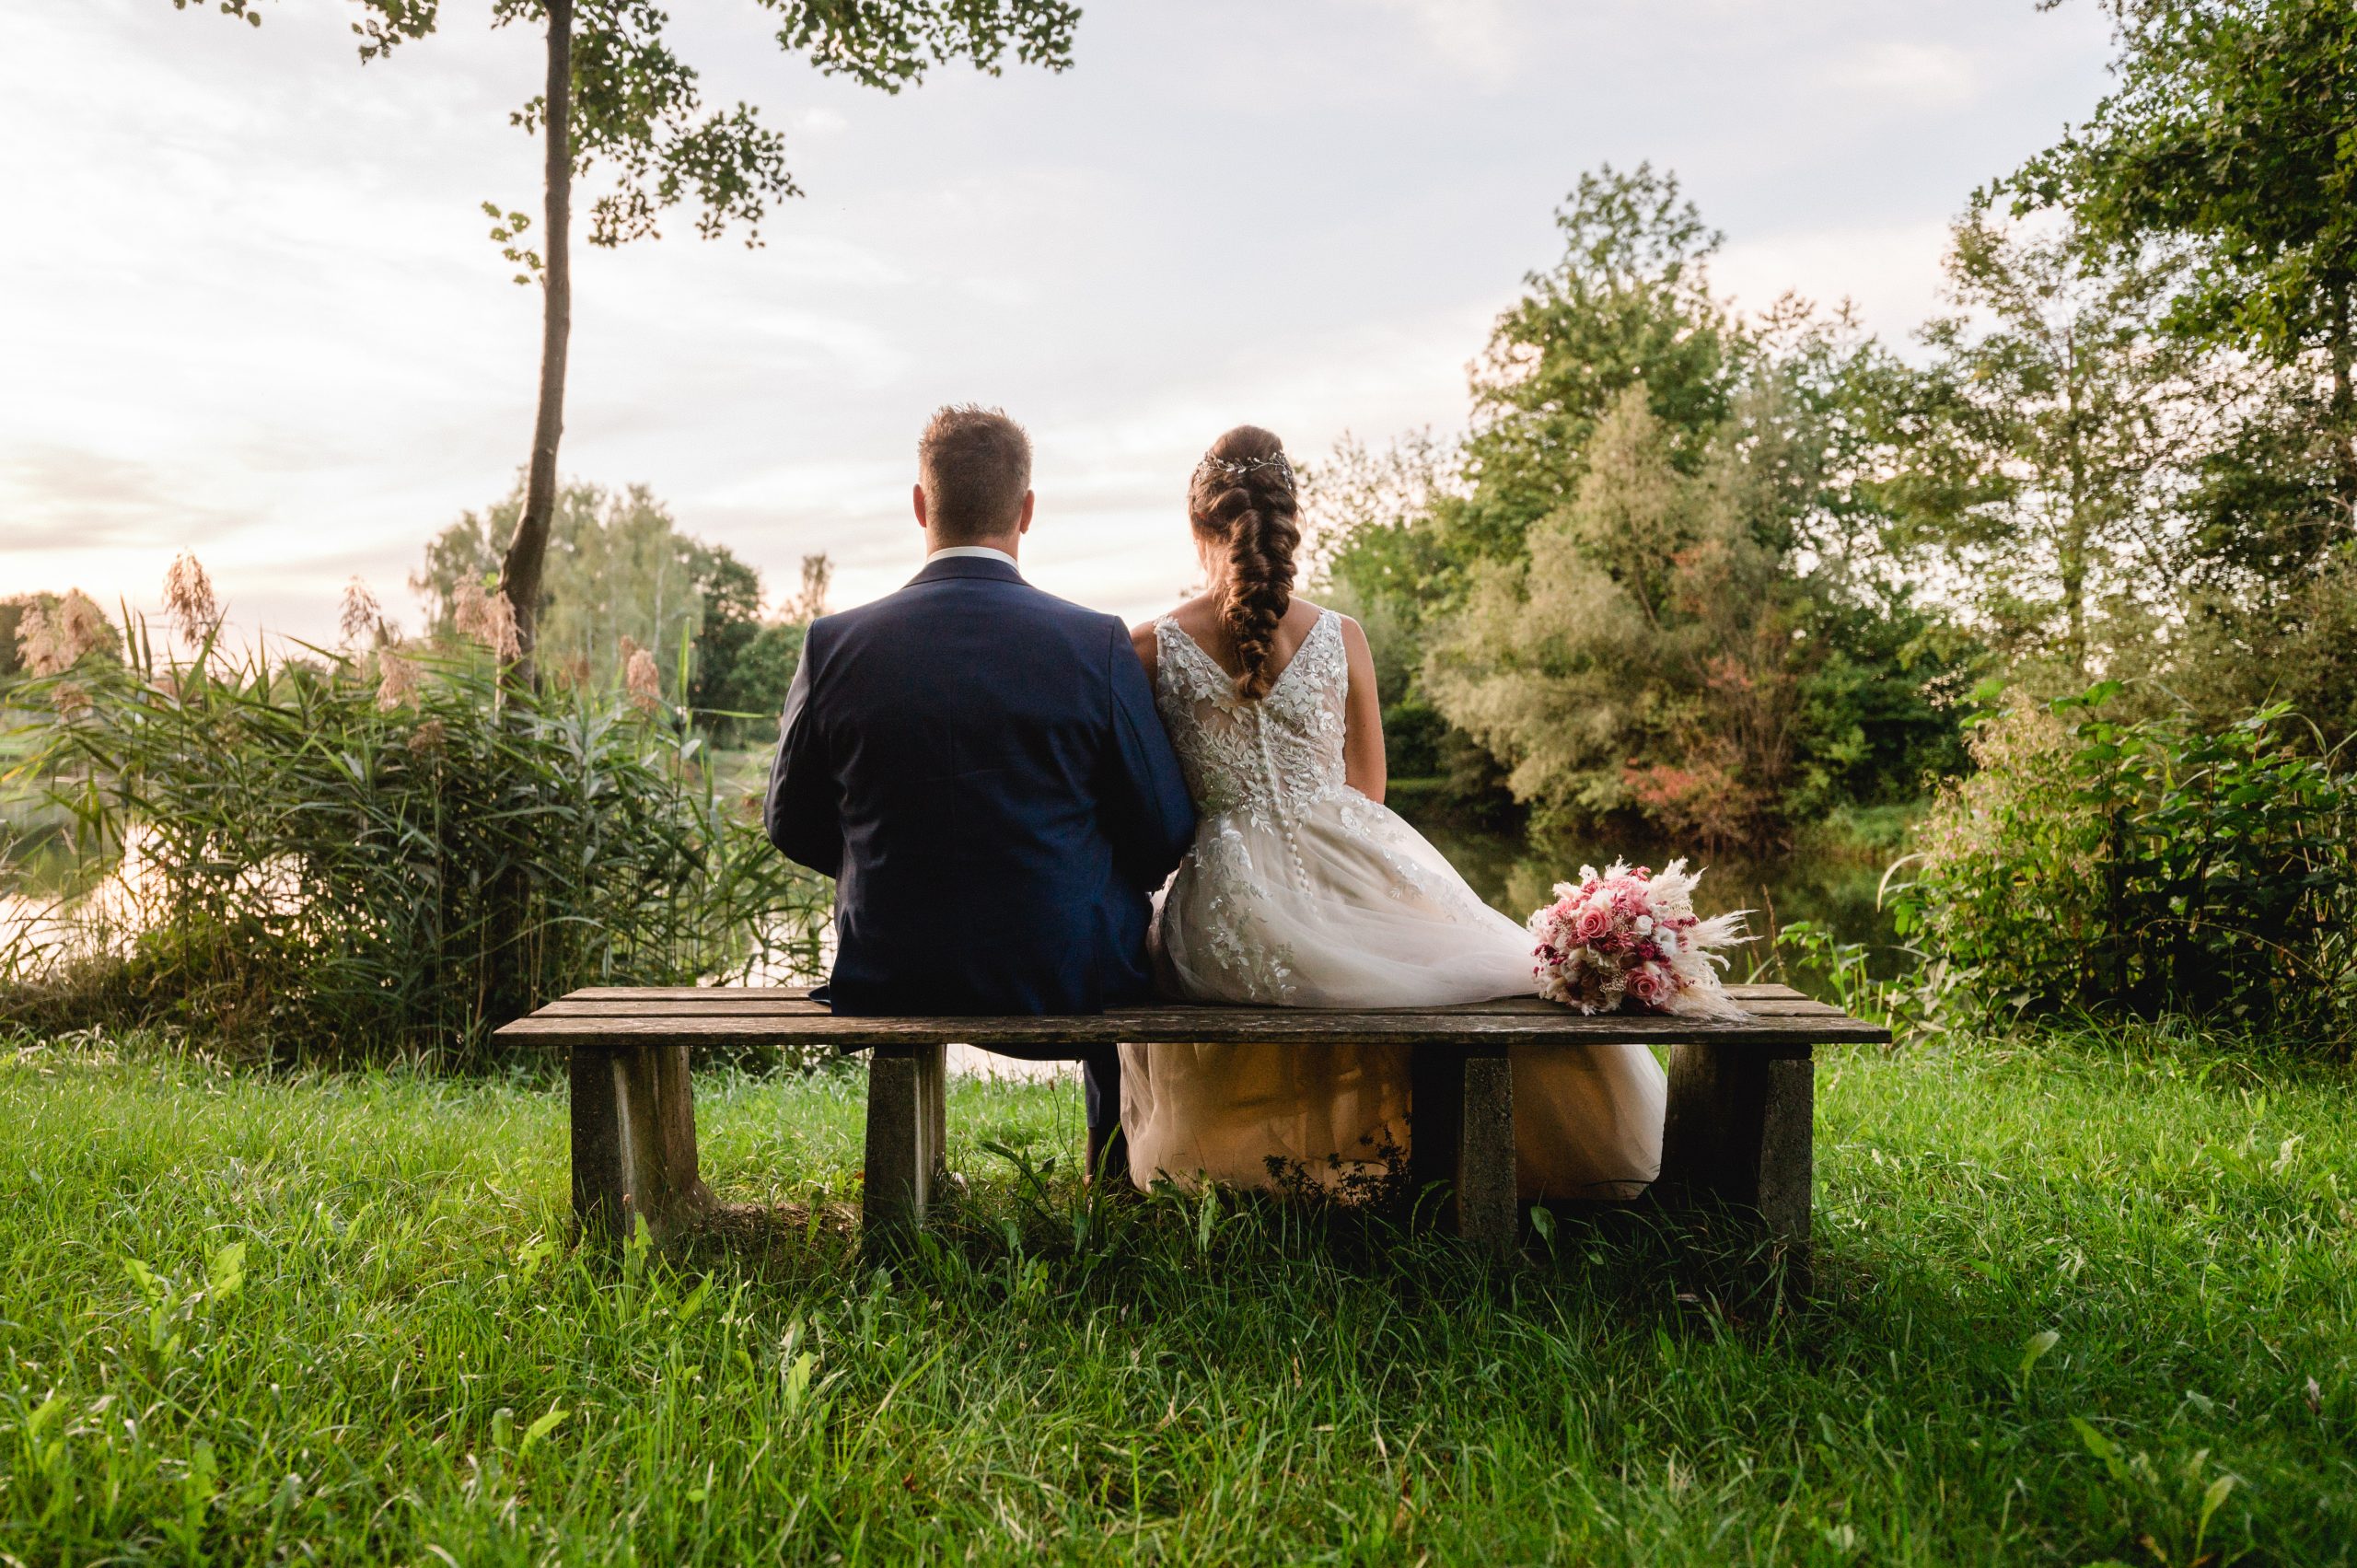 Eine Braut und ein Bräutigam sitzen auf einer Bank im Gras.